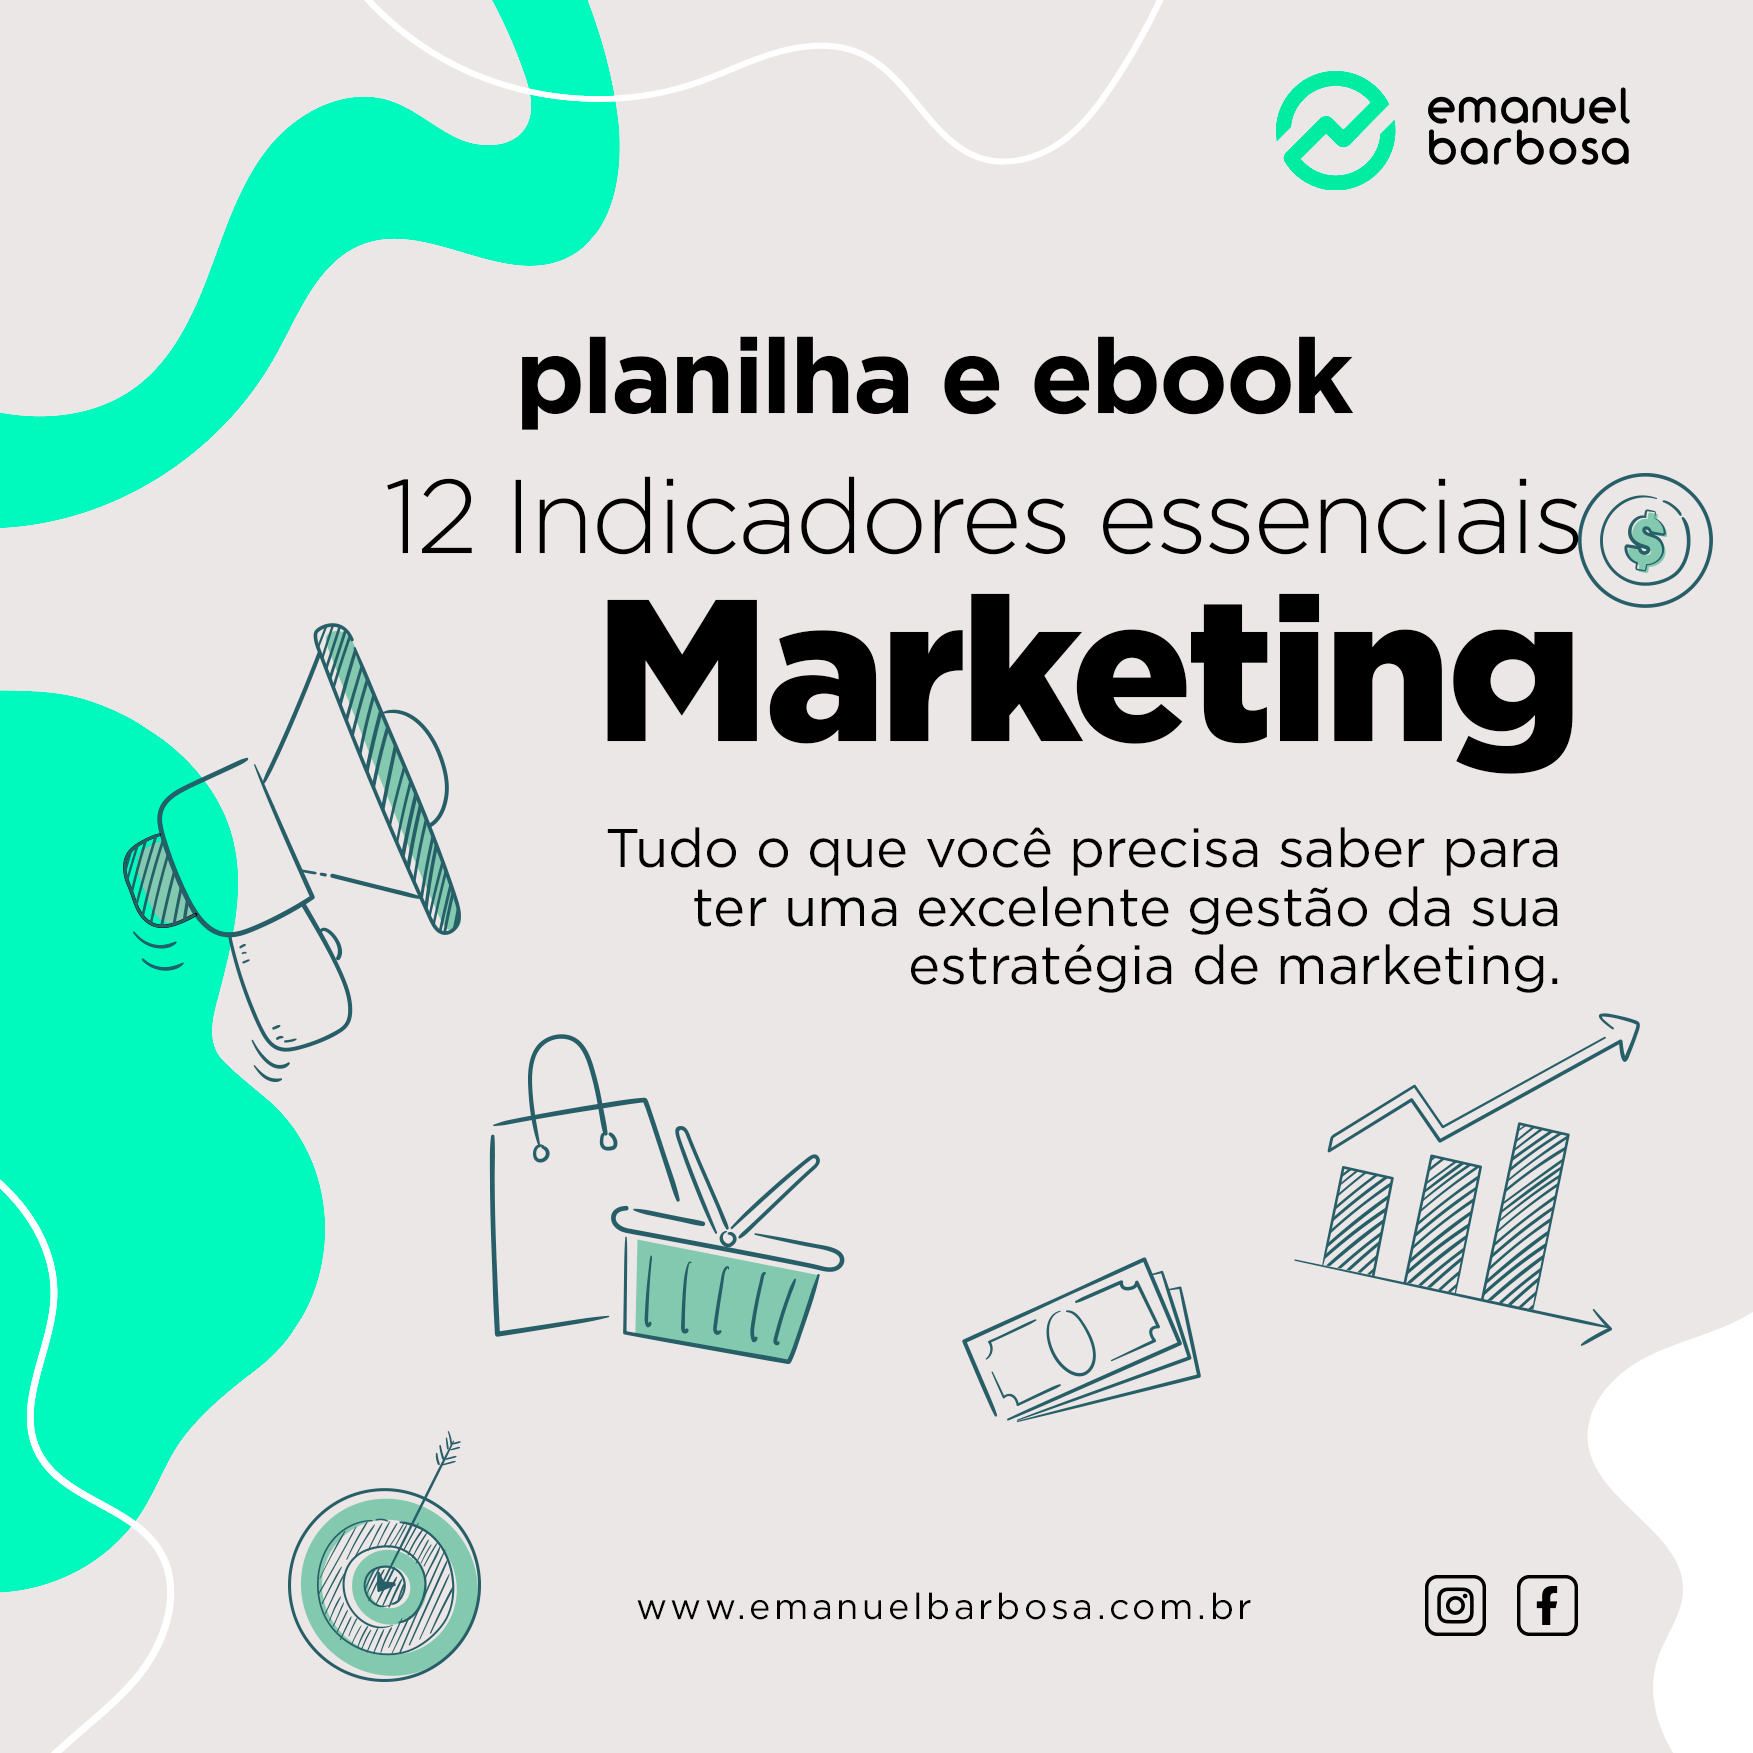 planilha-e-ebook-12-indicdores-de-marketing-essenciais-para-qualquer-negocio